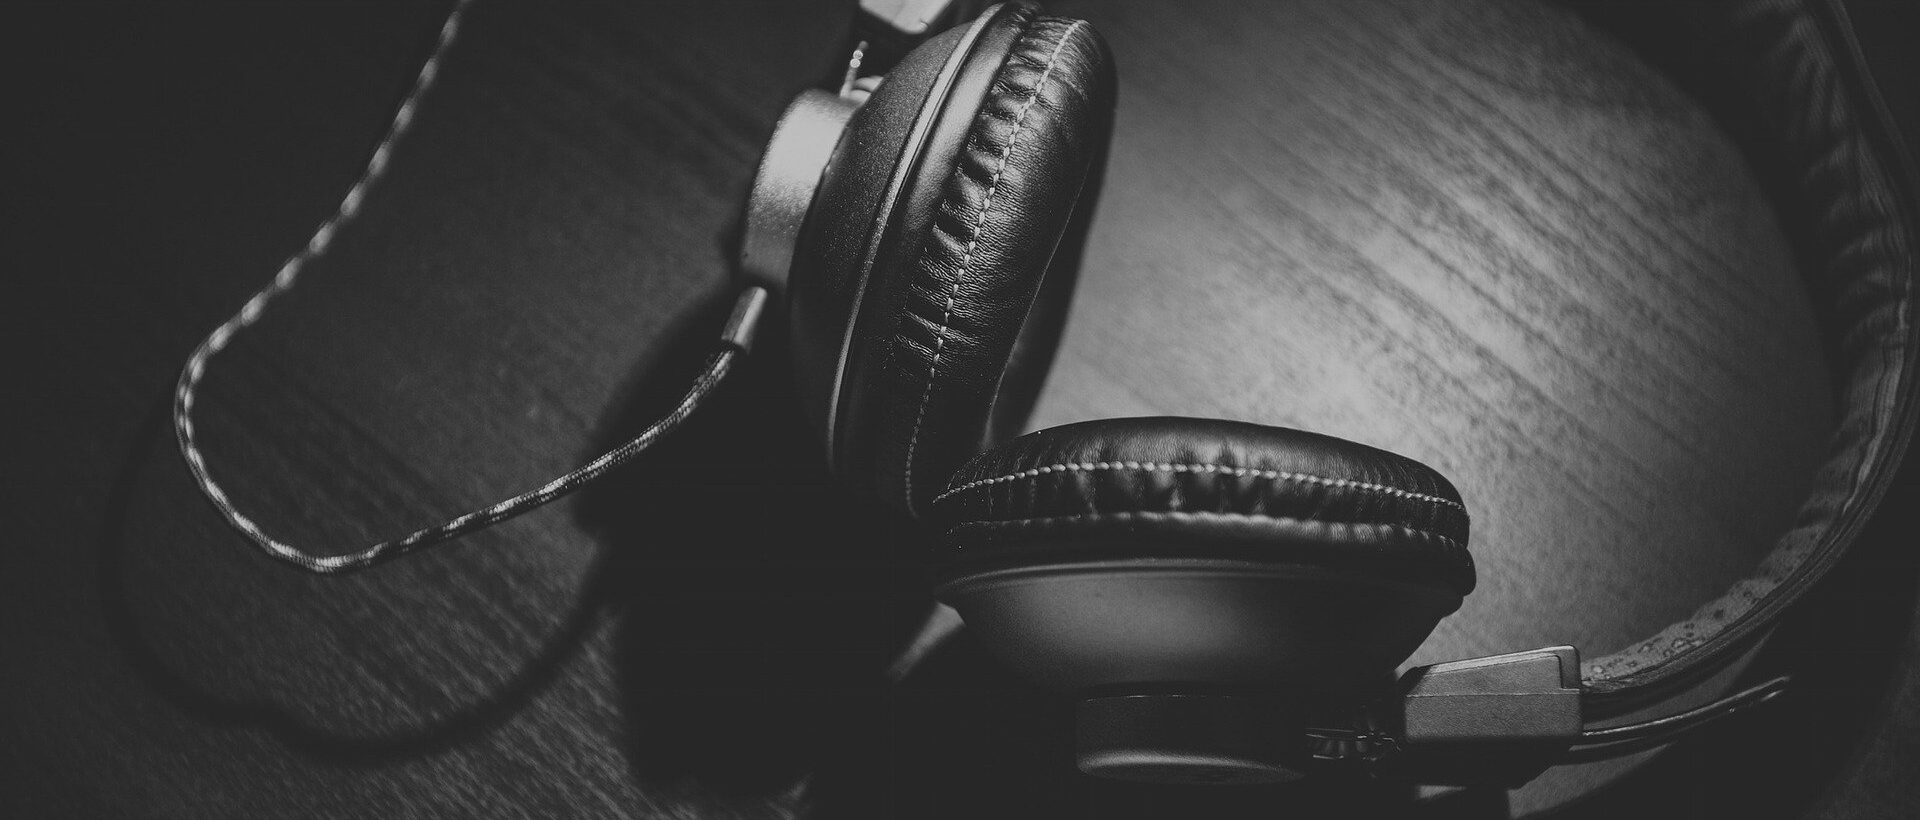 Kopfhörer sinnbildlich für Podcasts und Podcast Marketing im Marketing-Mix xeit